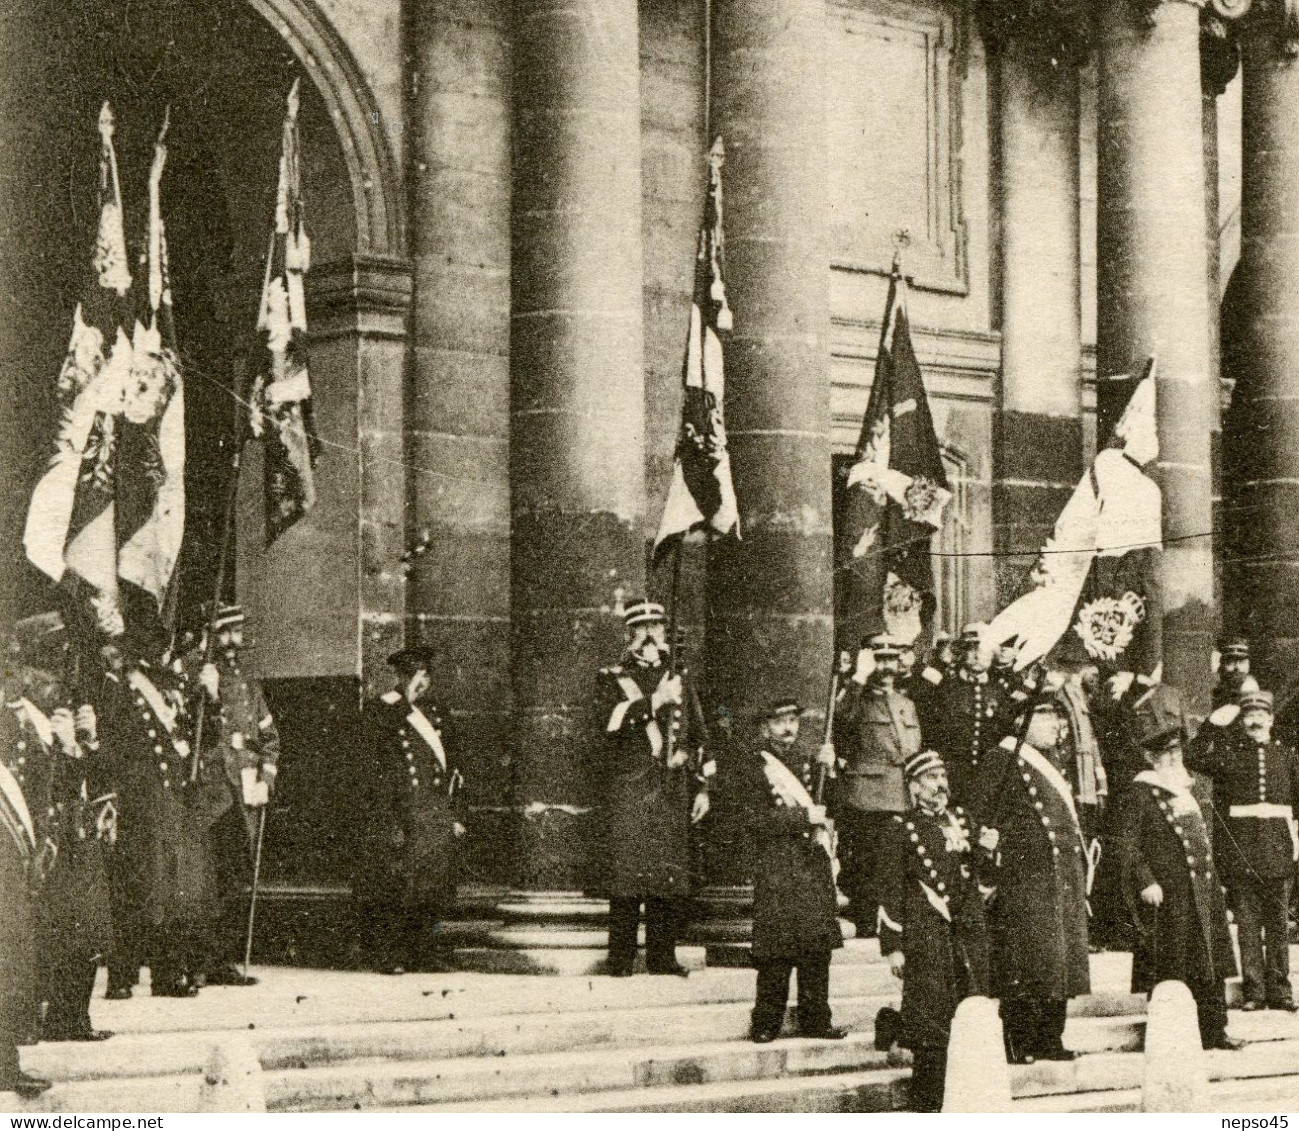 Remise Des Drapeaux Pris Aux Allemands Au Gouverneur Des Invalides Le 7 Octobre 1914. - Demonstrations